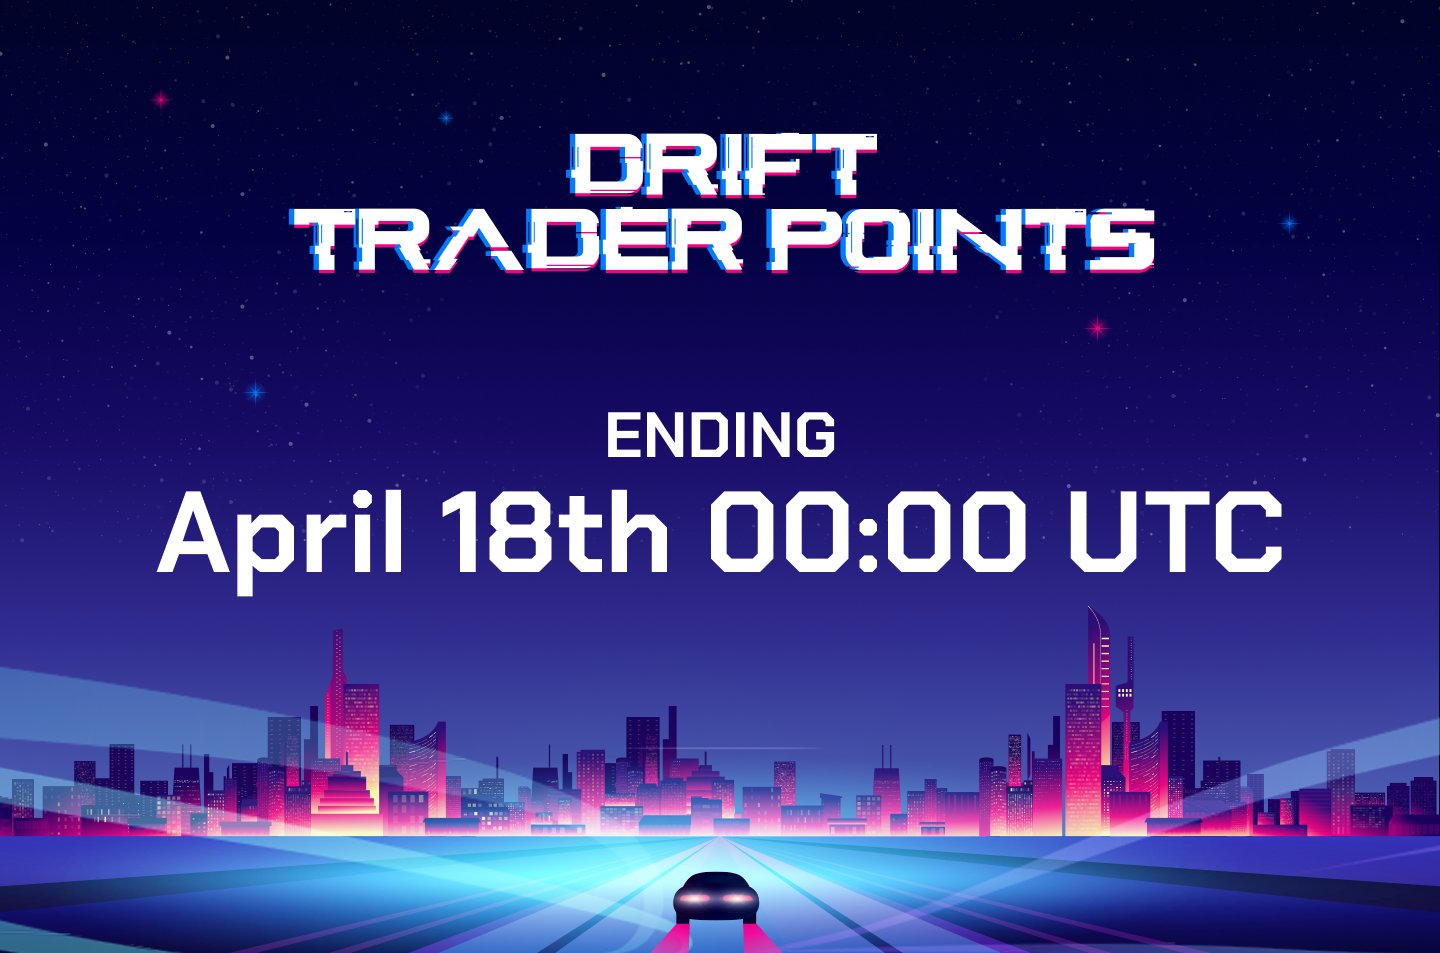 Le programme de point de Drift prends fin le 18 avril